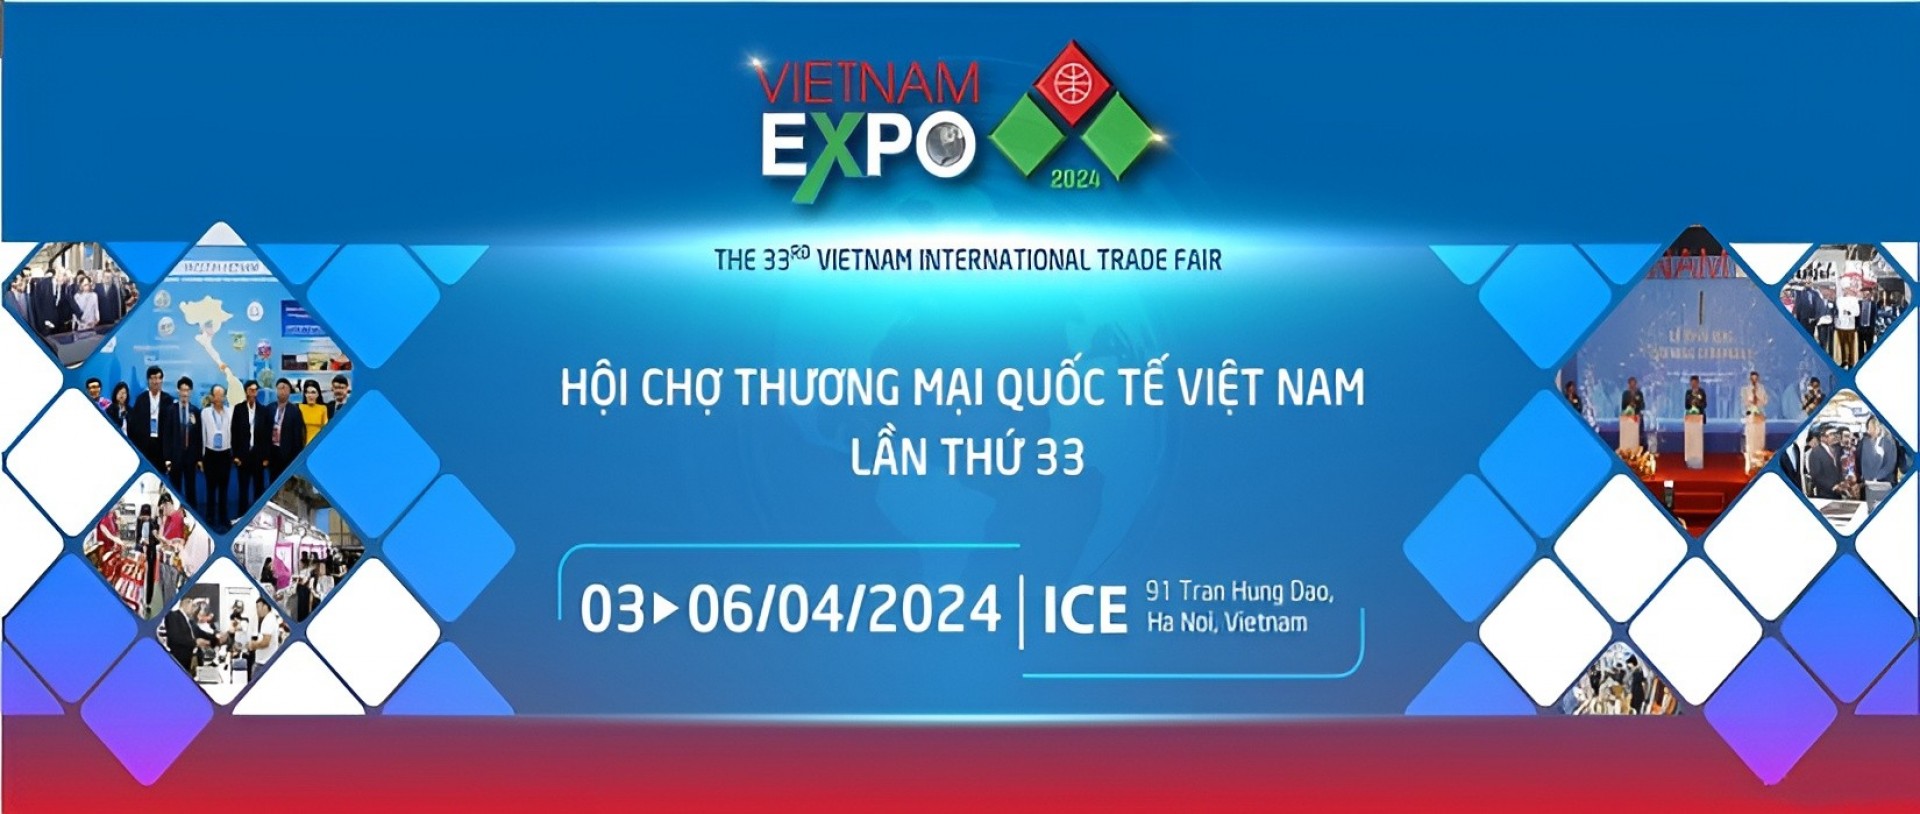 Vietnam Expo Hanoi 2024 - Hội chợ Thương mại Quốc tế Việt Nam Đăng ký